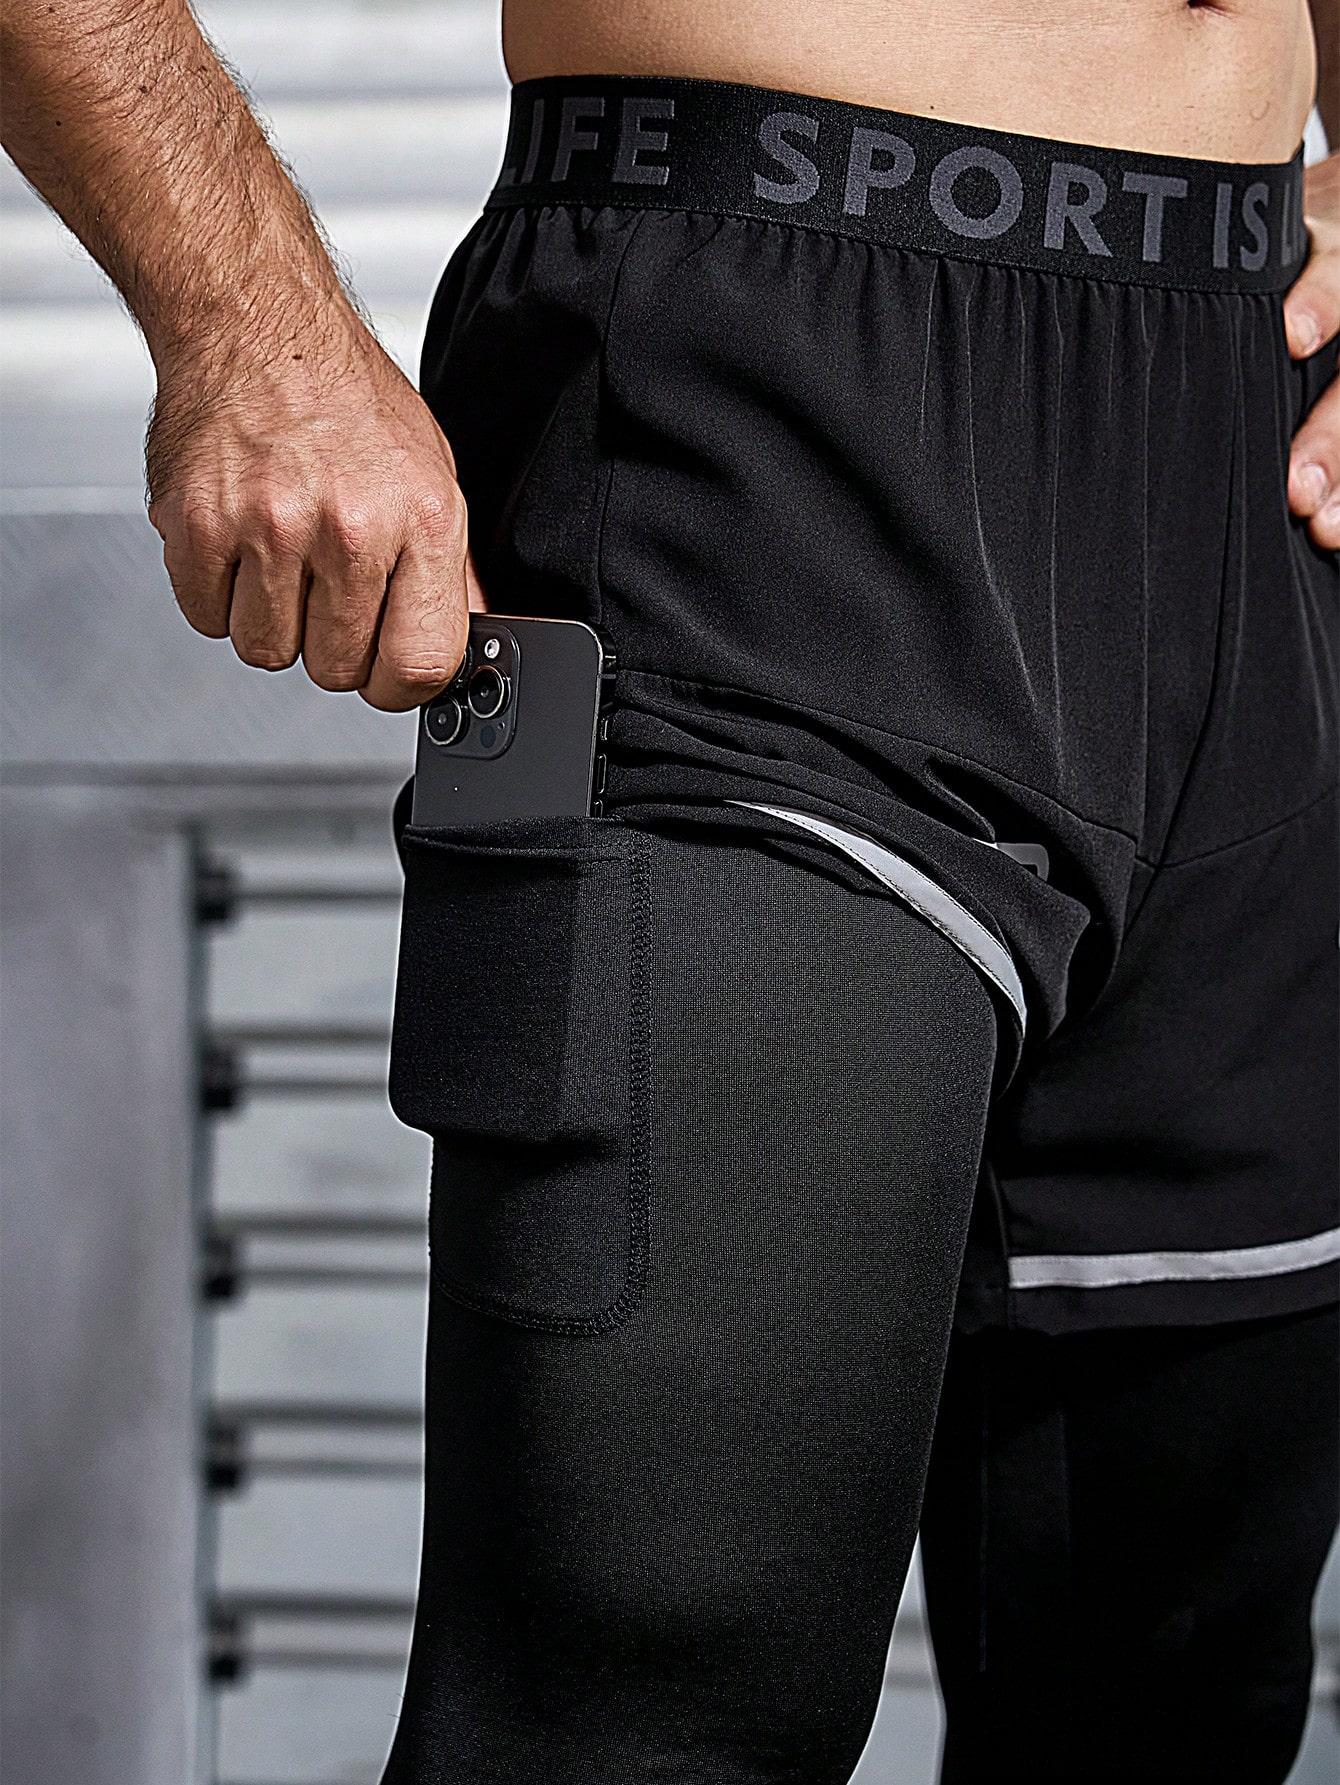 spodnie treningowe łączenie elementy odblaskowe